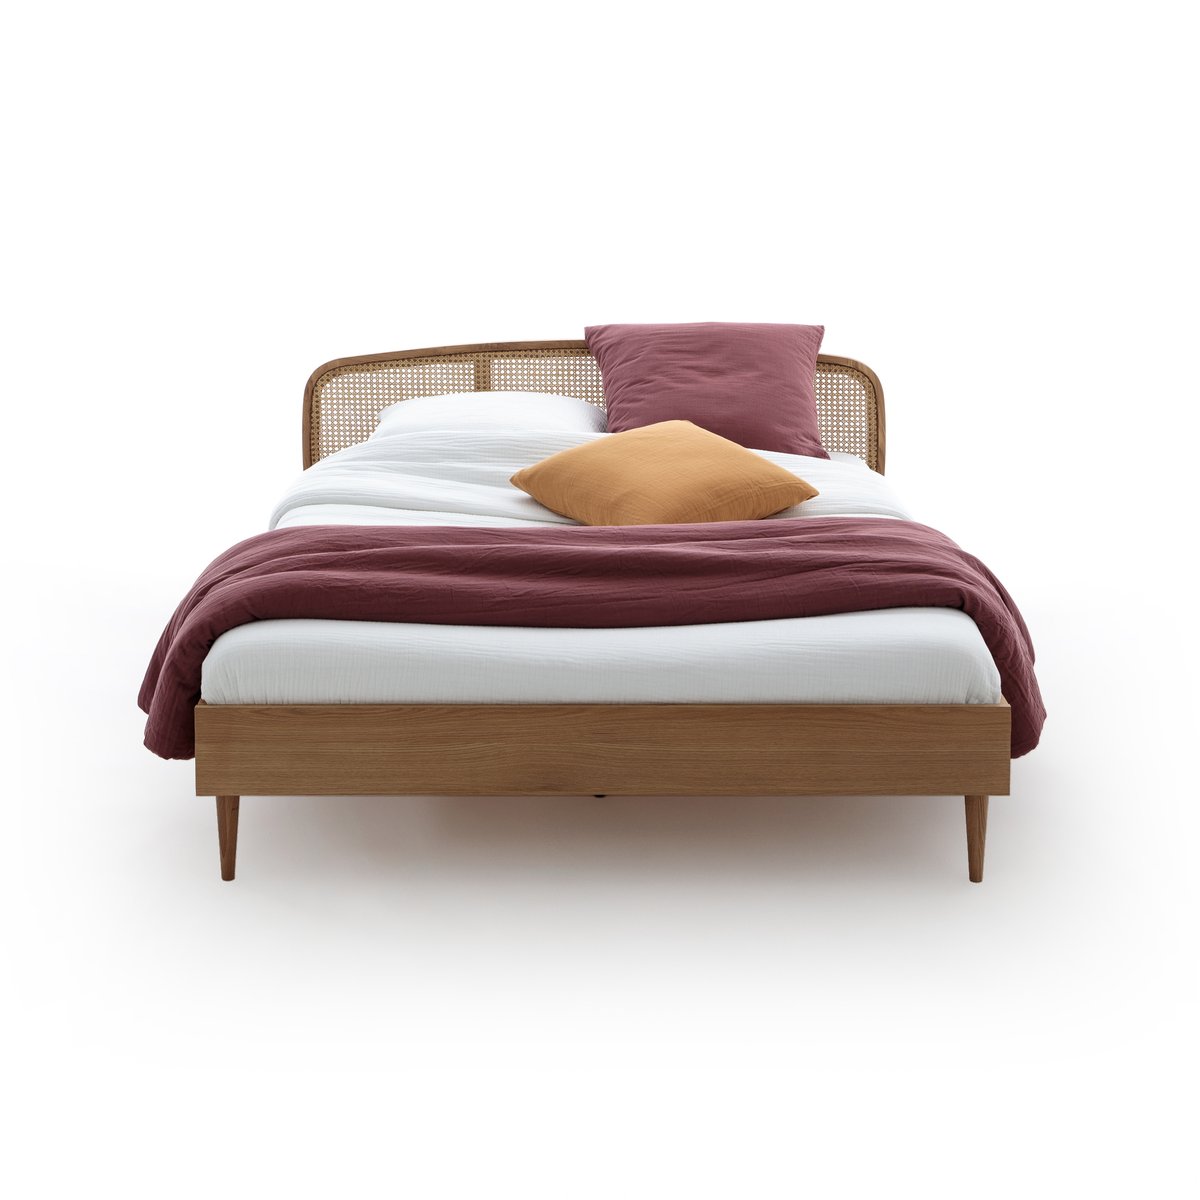 Кровать La Redoute Из дуба и плетеного материала с реечным основанием Buisseau 140 x 190 см каштановый, размер 140 x 190 см - фото 2